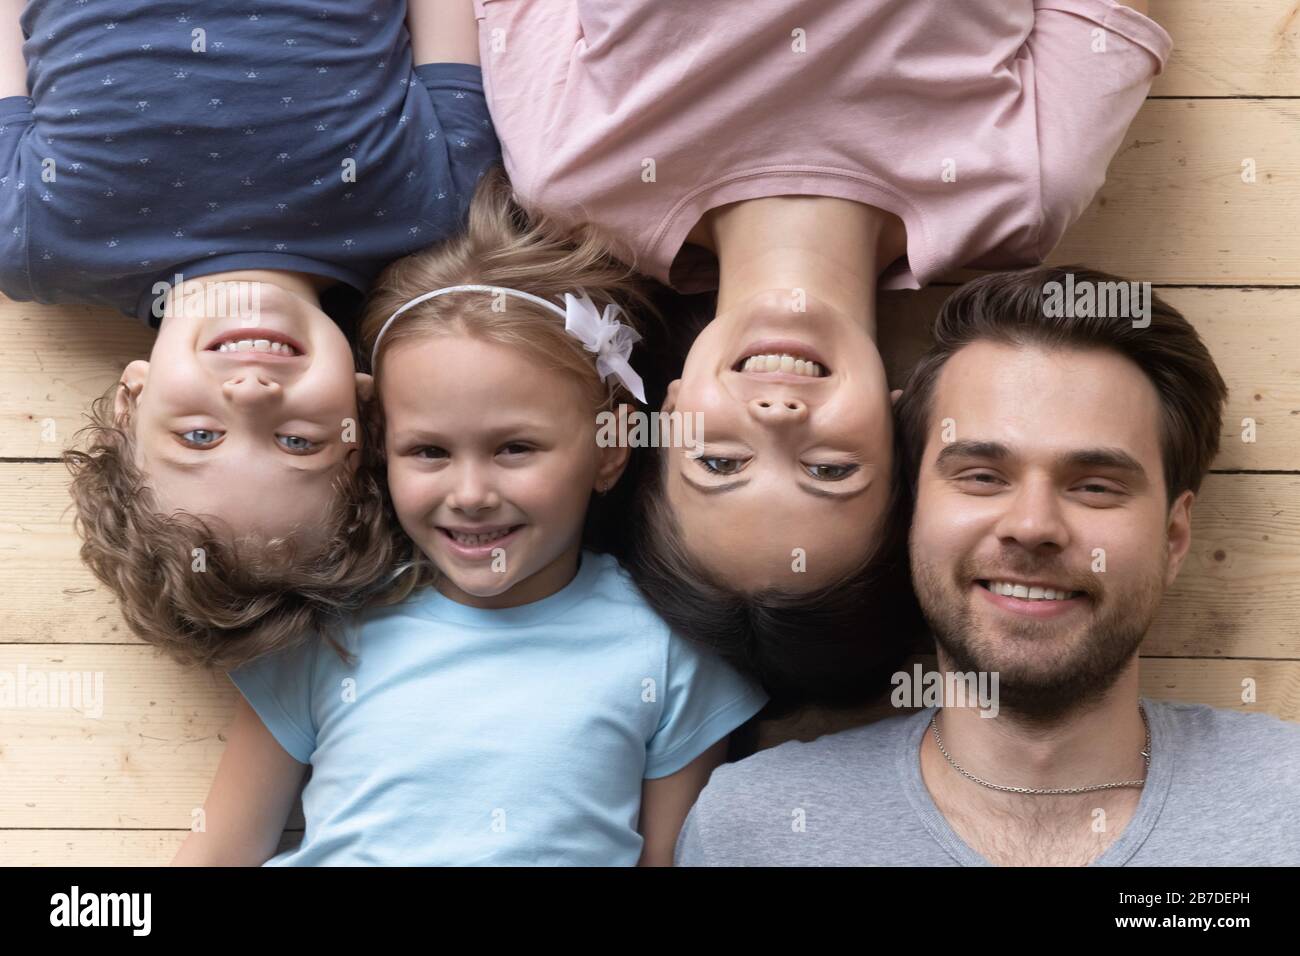 Vue sur la famille heureuse avec des enfants se reposant sur le sol Banque D'Images